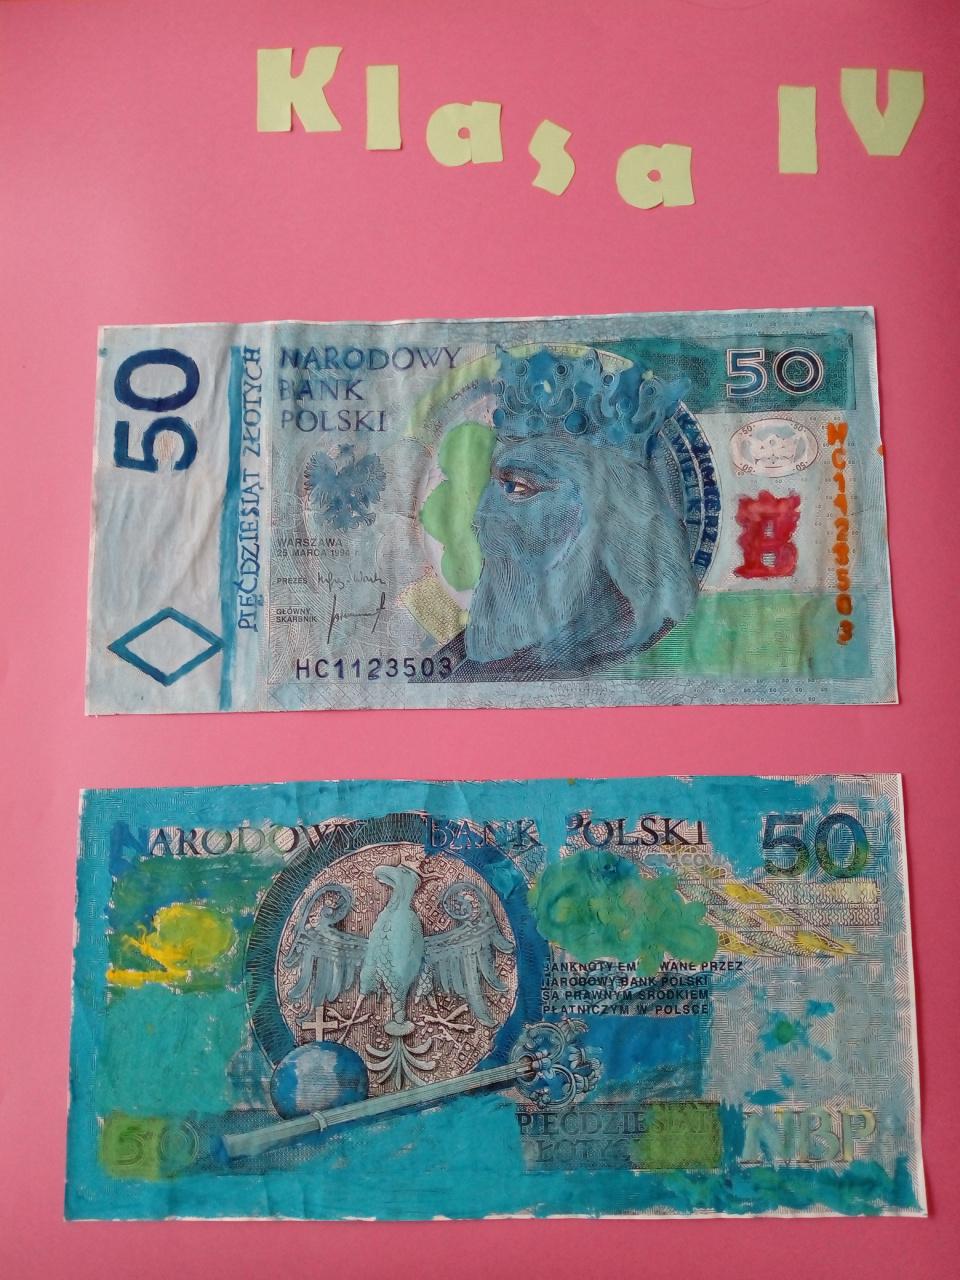 Nasze banknoty - praca klasy IV